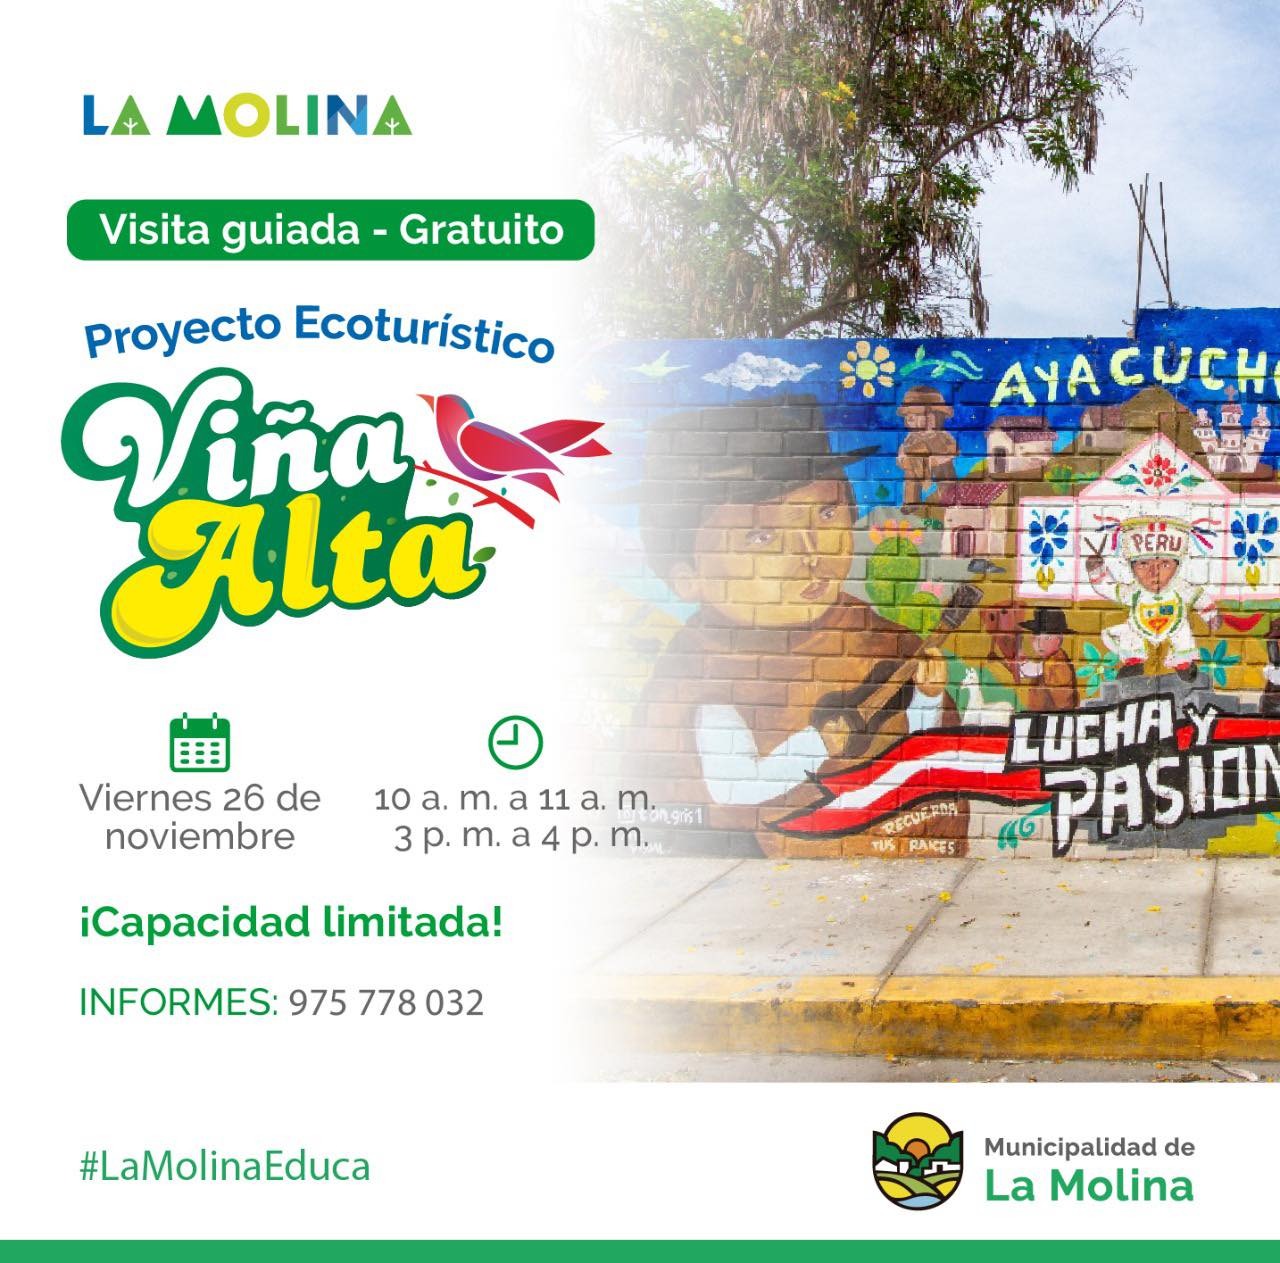 PROYECTO ECOTURÍSTICO VIÑA ALTA  Visita guiada al Proyecto Ecoturístico Viña Alta, donde apreciaremos hermosos murales artísticos que retratan la tradición y logros de nuestra comuna.